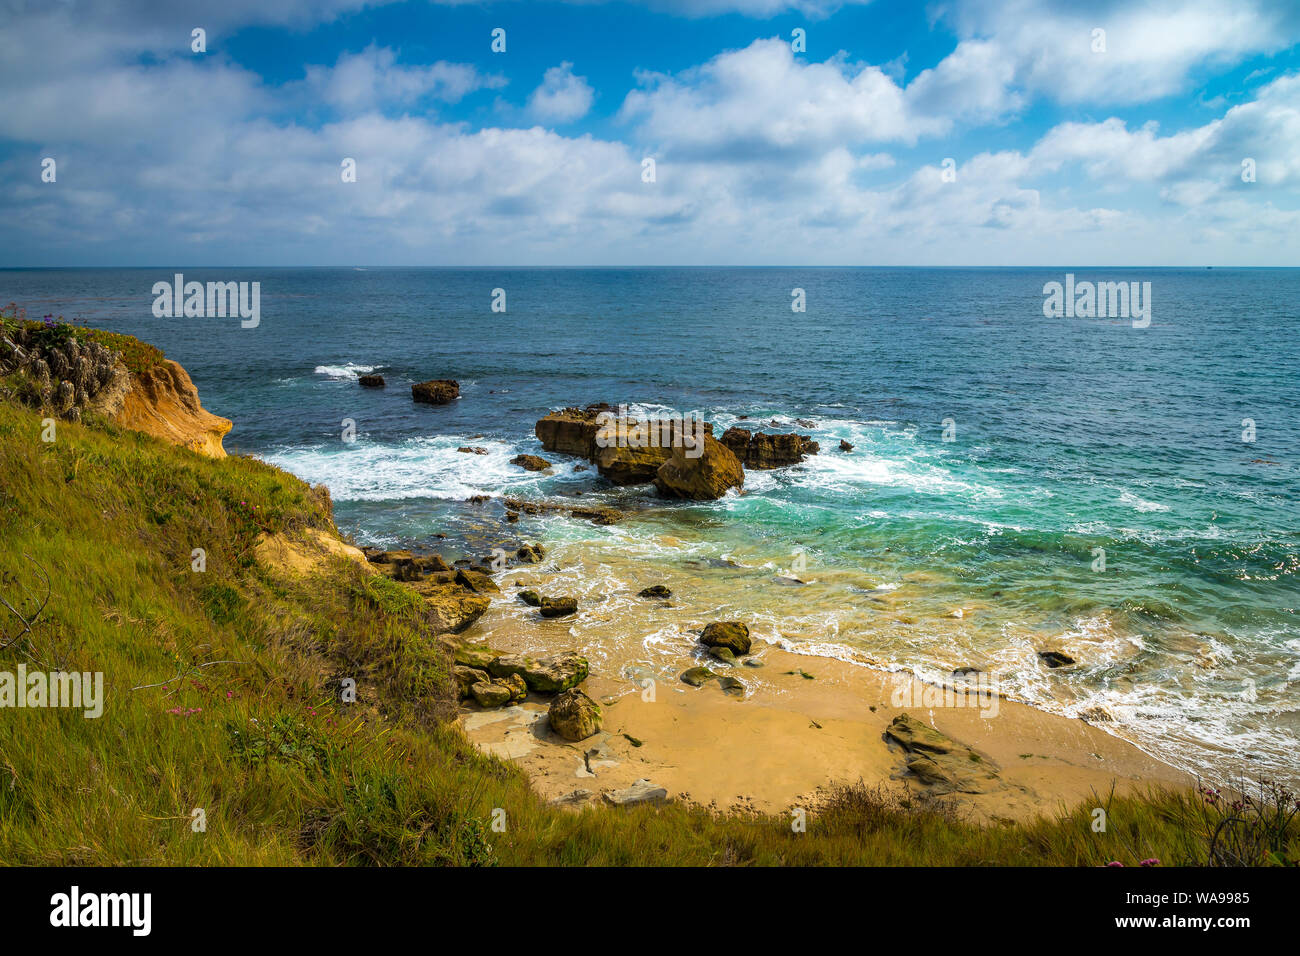 Beau bleu turquoise et de l'eau avec vagues se briser dans des formations rocheuses sur une journée ensoleillée, Laguna Beach, Californie Banque D'Images